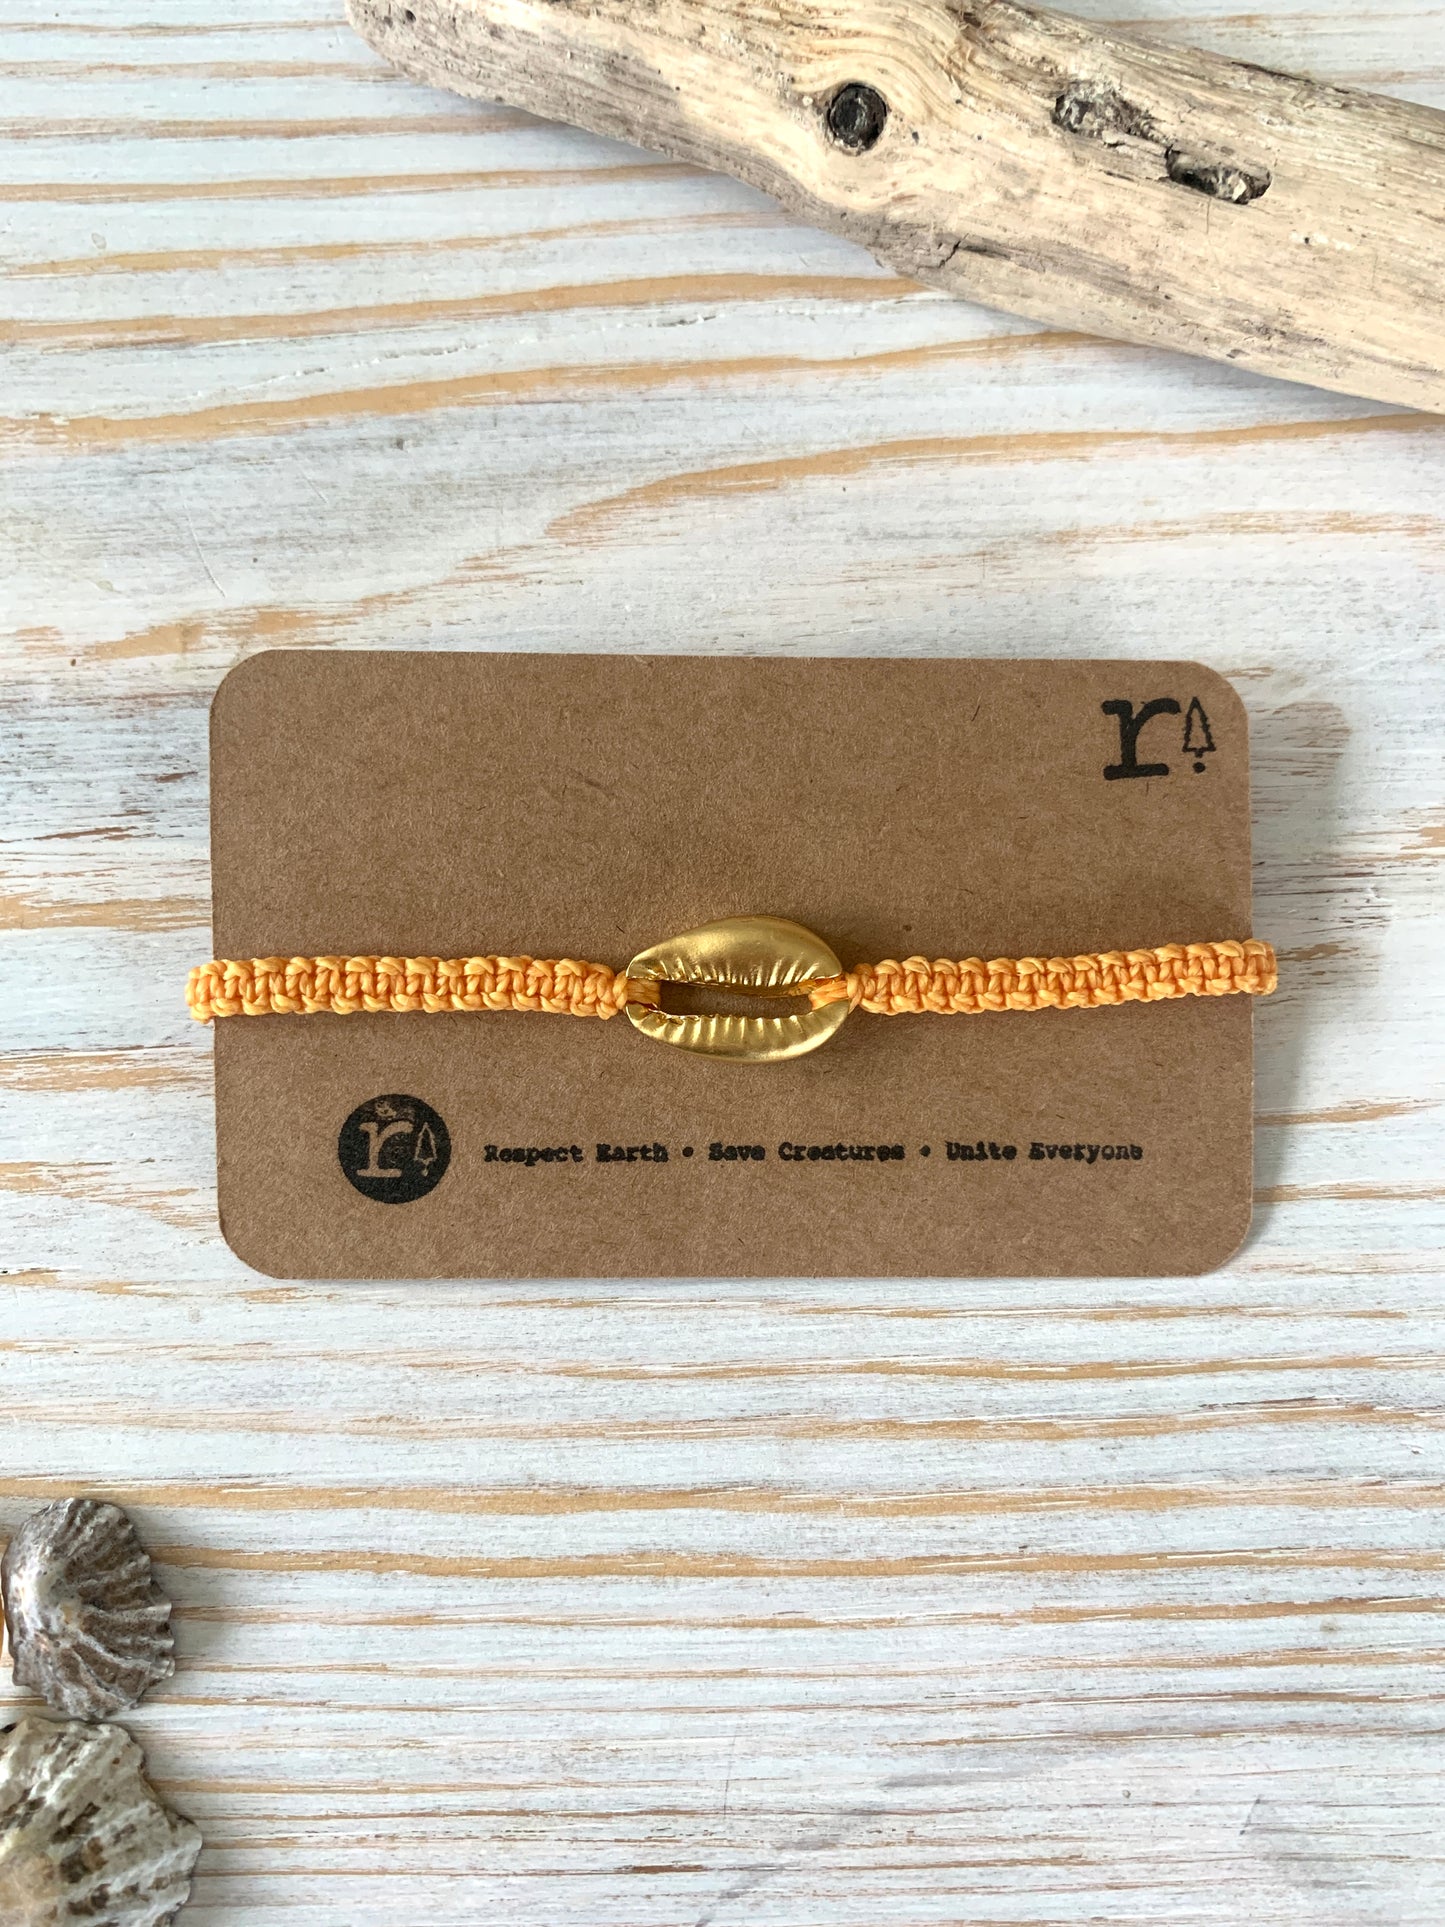 cowrie shell bracelet